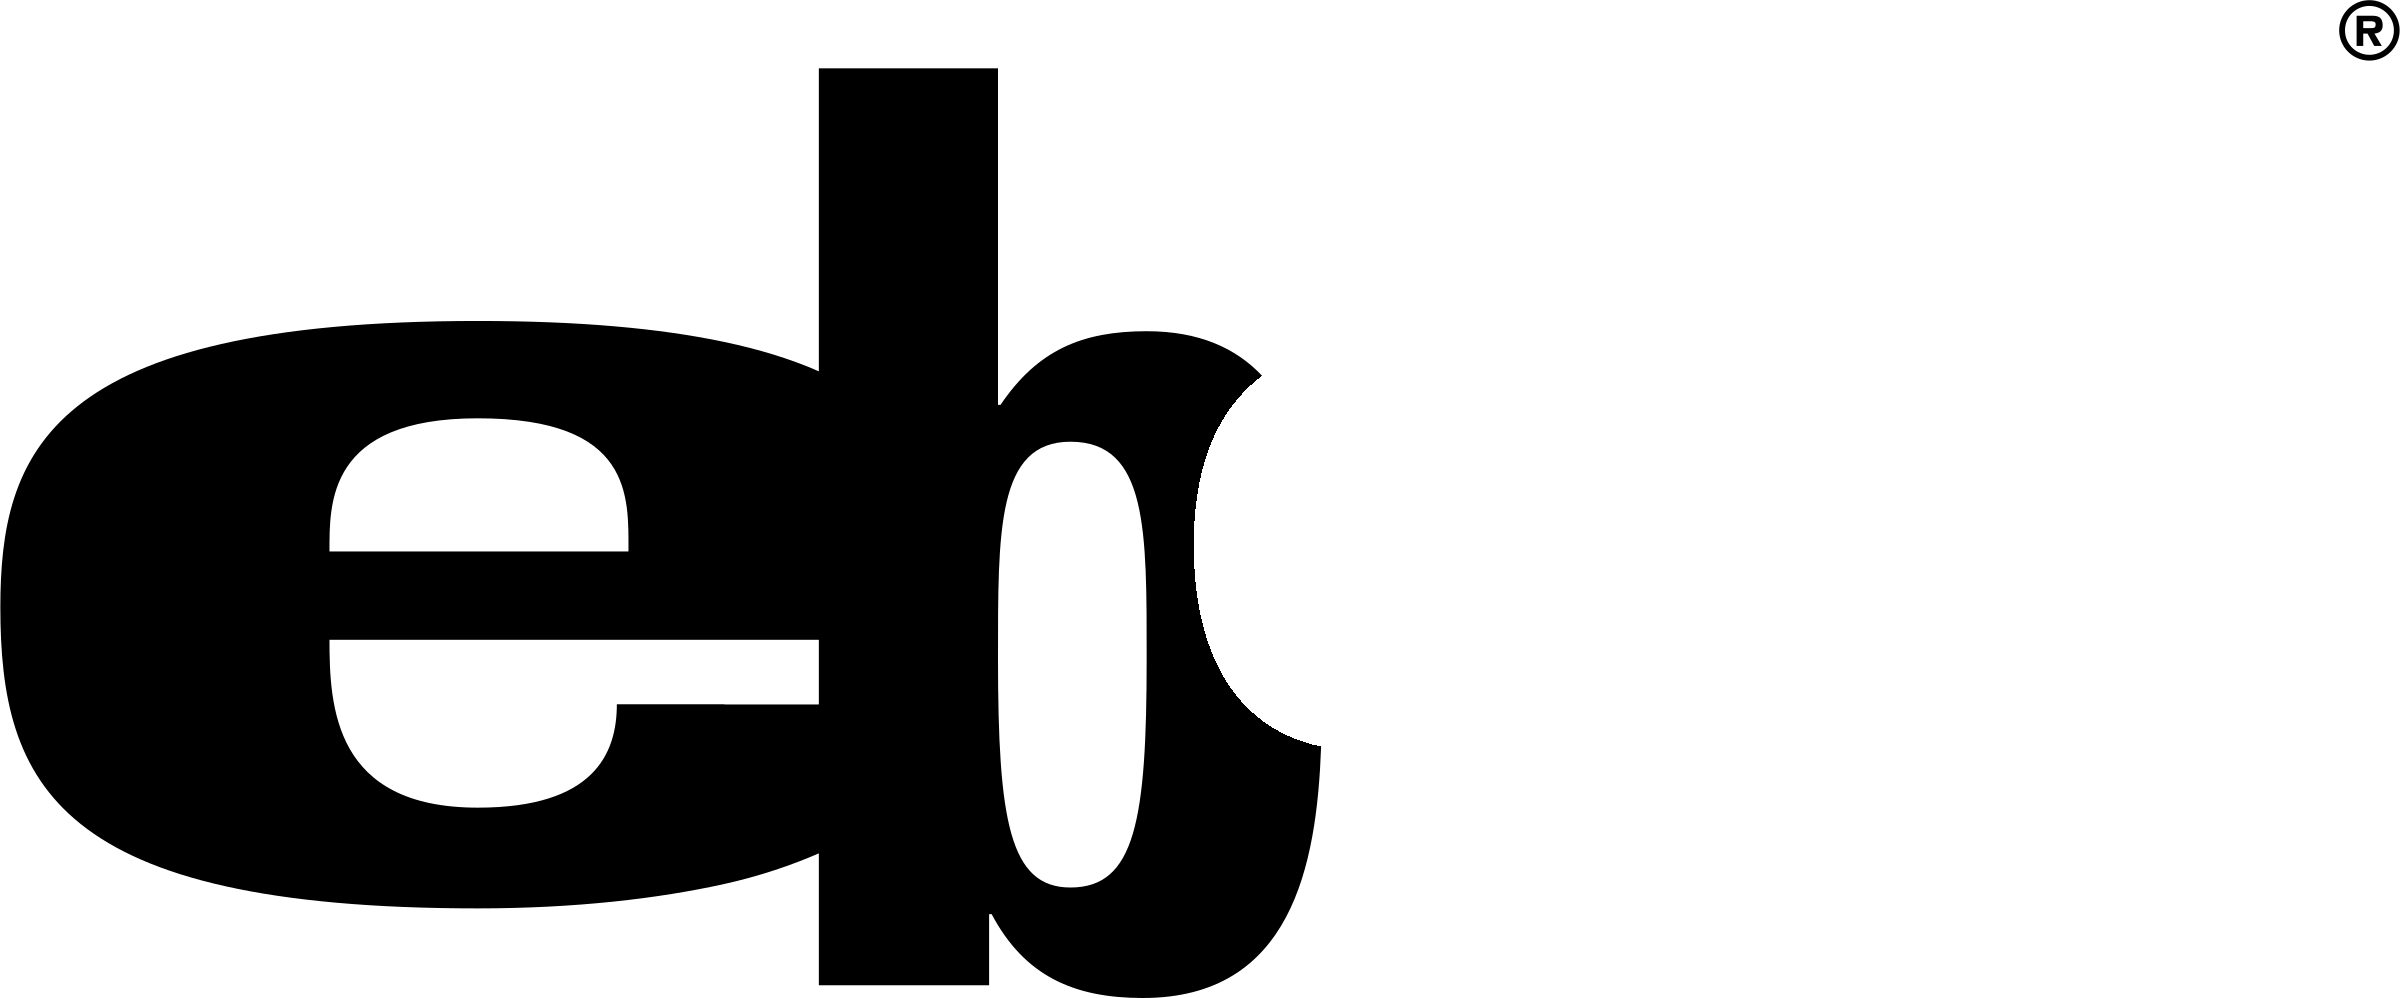 Image vectorielle logo eBay logo